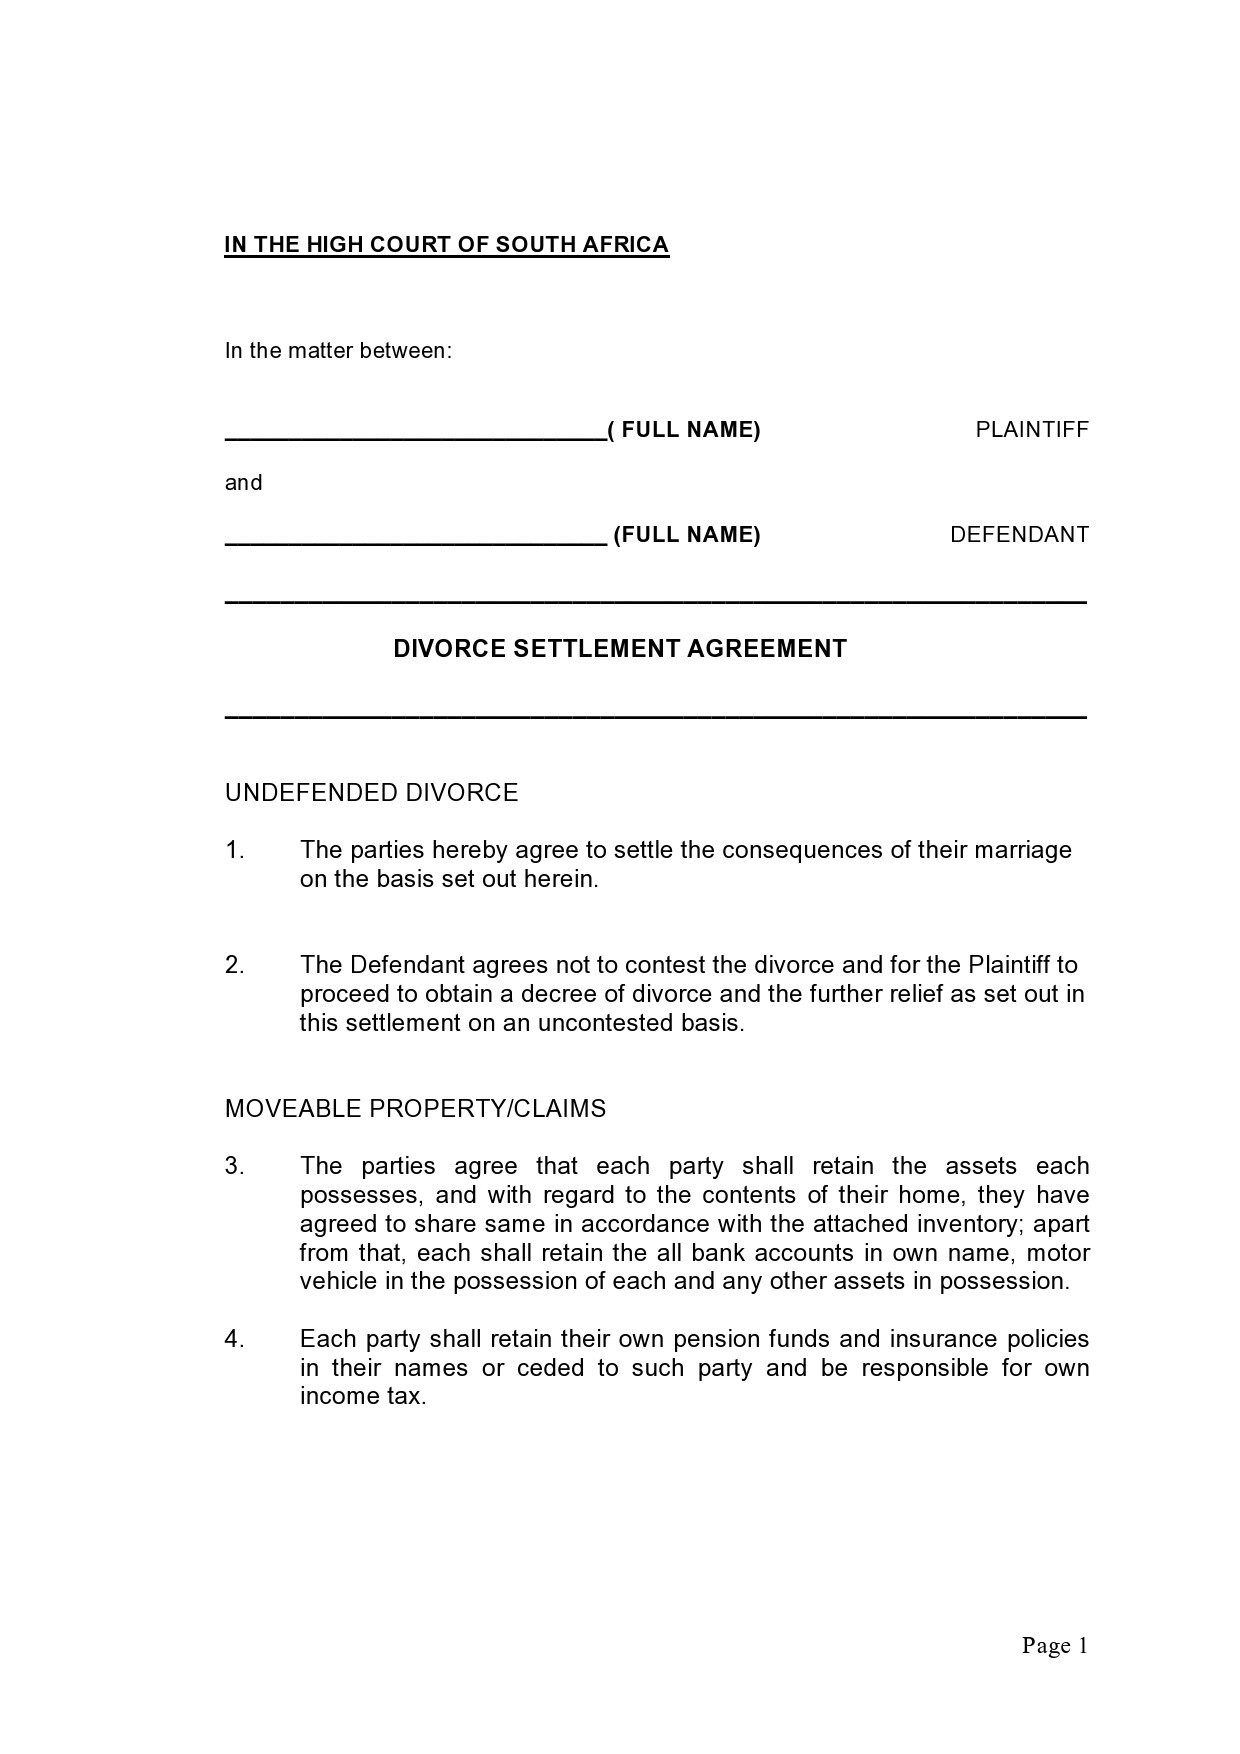 Free marital settlement agreement 49